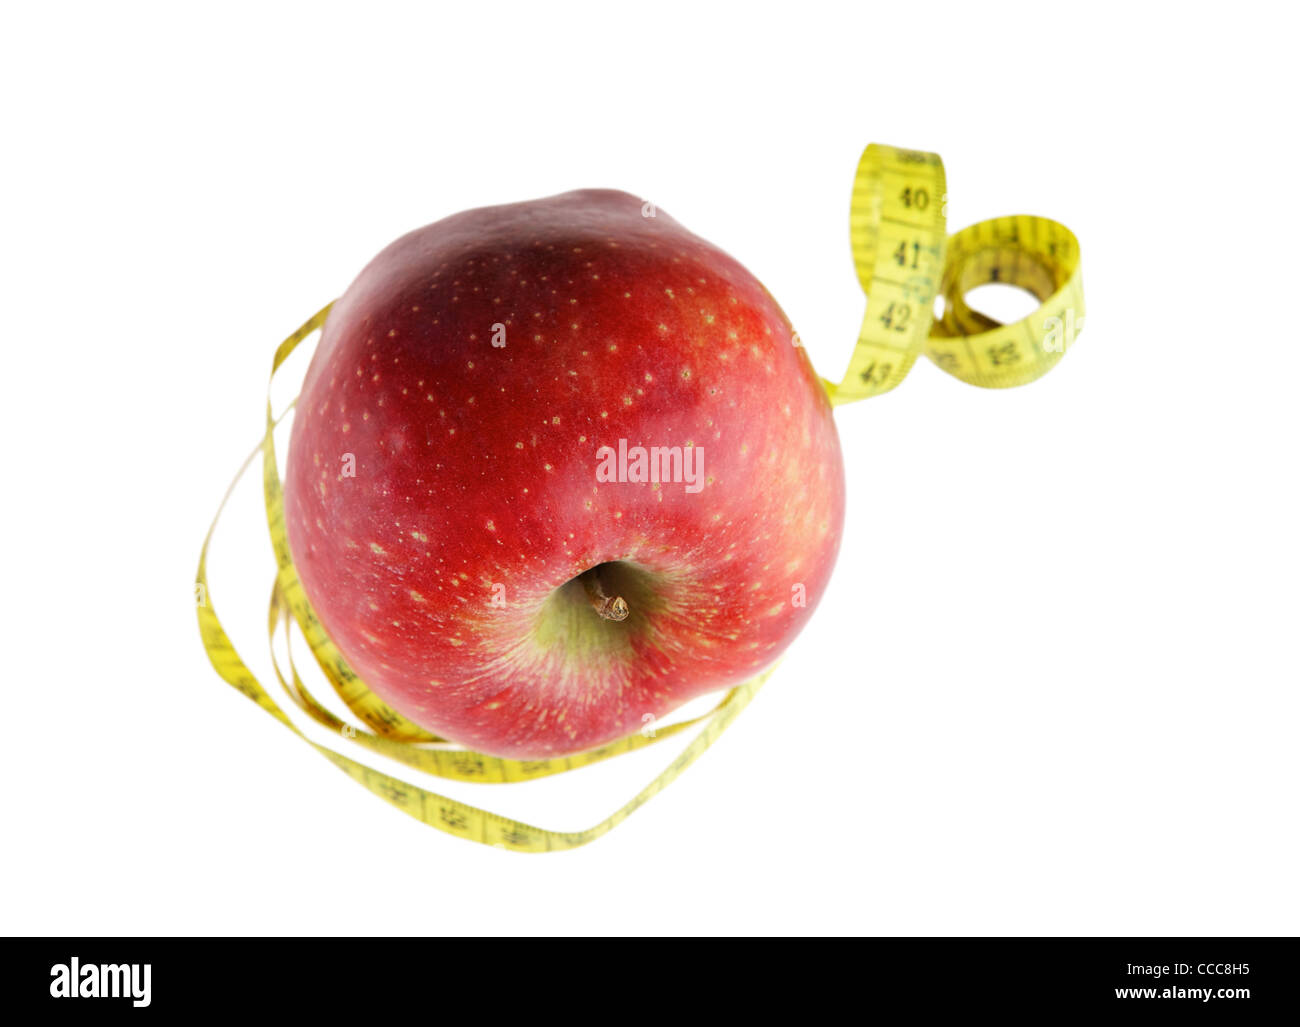 Ripe red apple avec un ruban à mesurer Banque D'Images